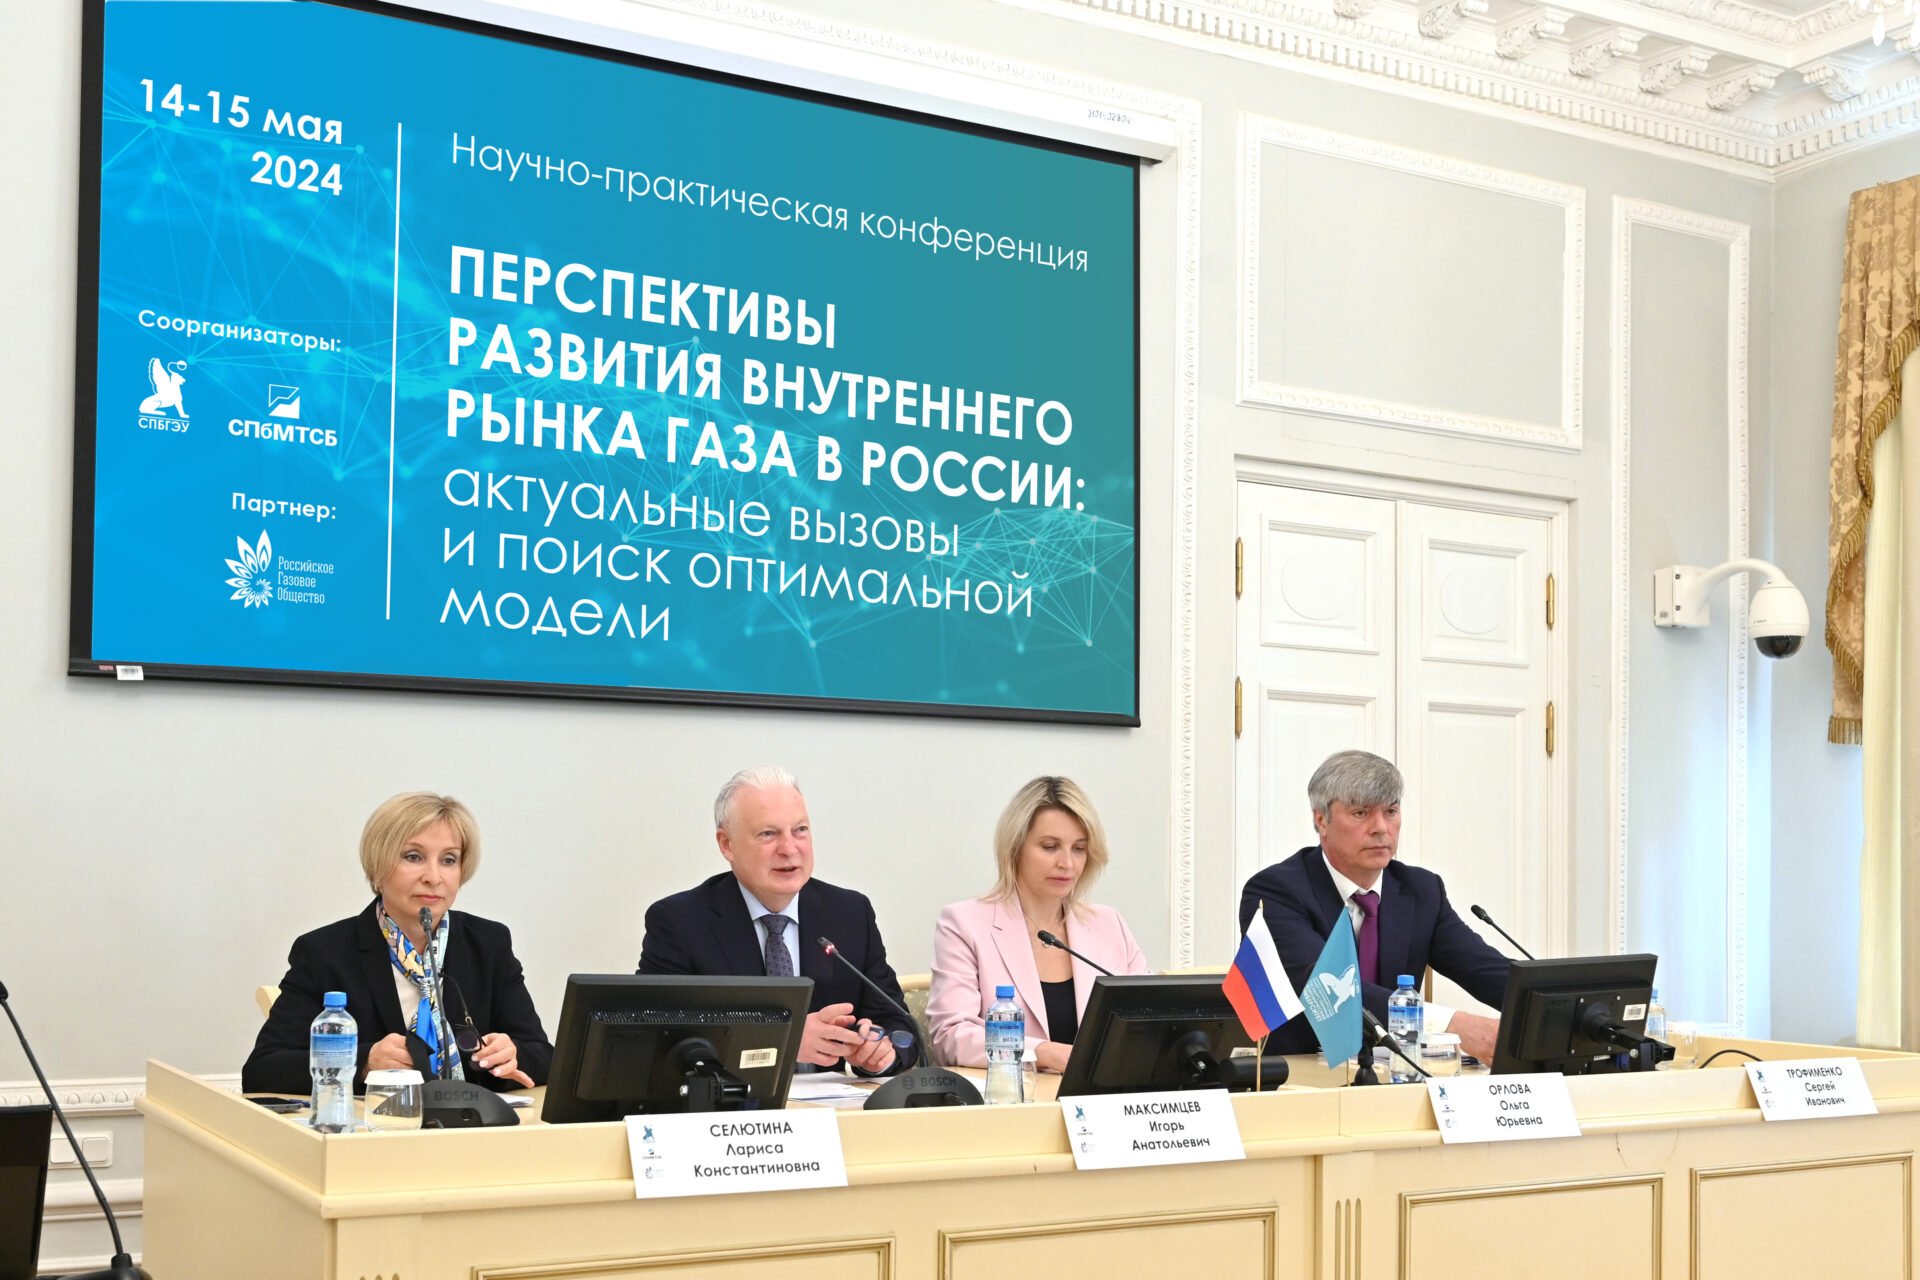 Развитие внутреннего рынка газа в России обсудили на конференции СПбГЭУ и СПбМТСБ